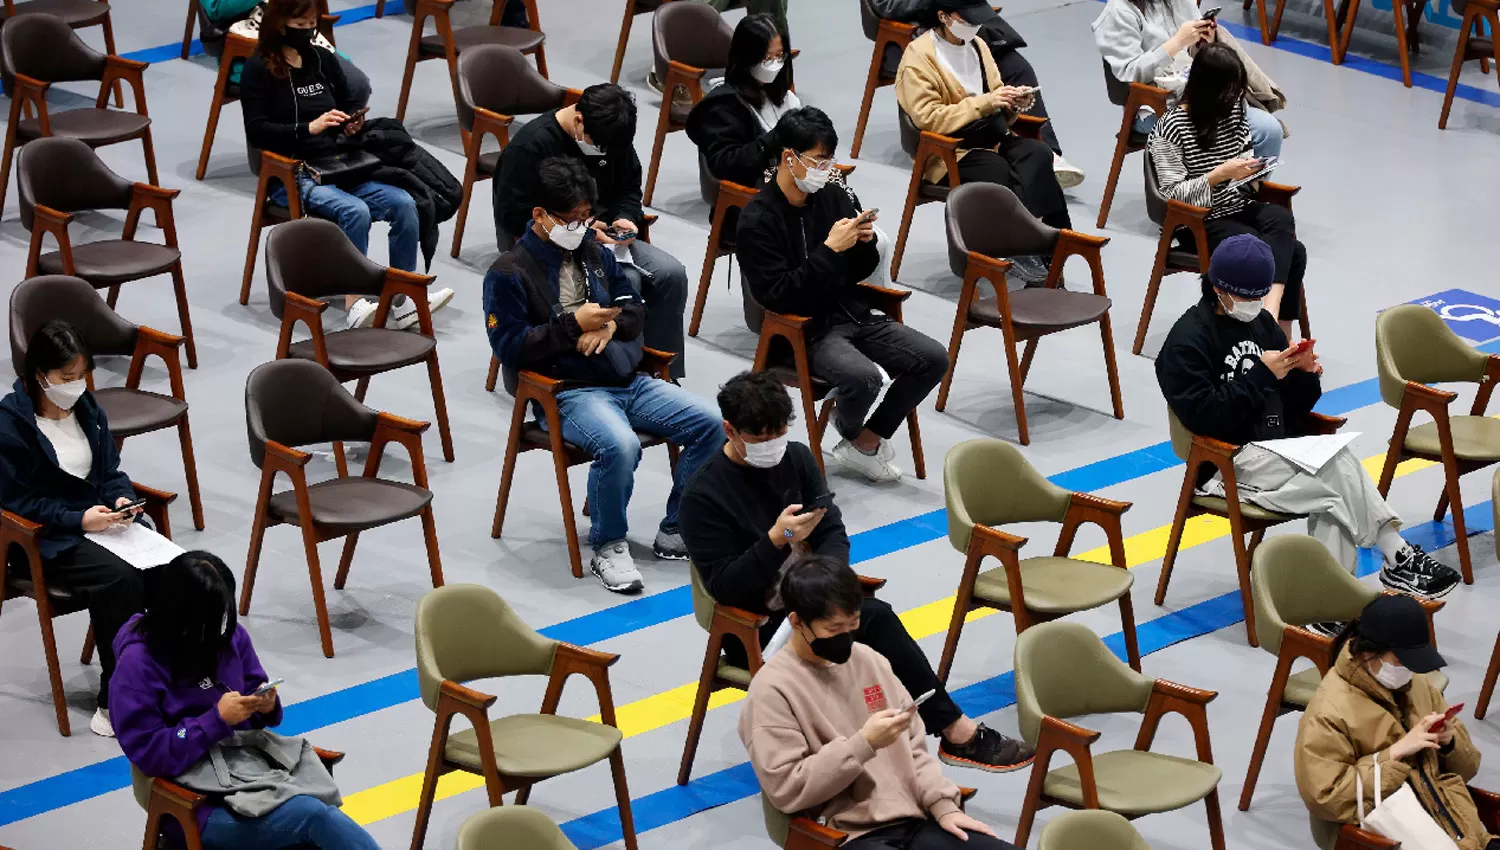 A LA ESPERA. Decenas de personas aguardan recibir una vacuna en Seúl, la capital de Corea del Sur.